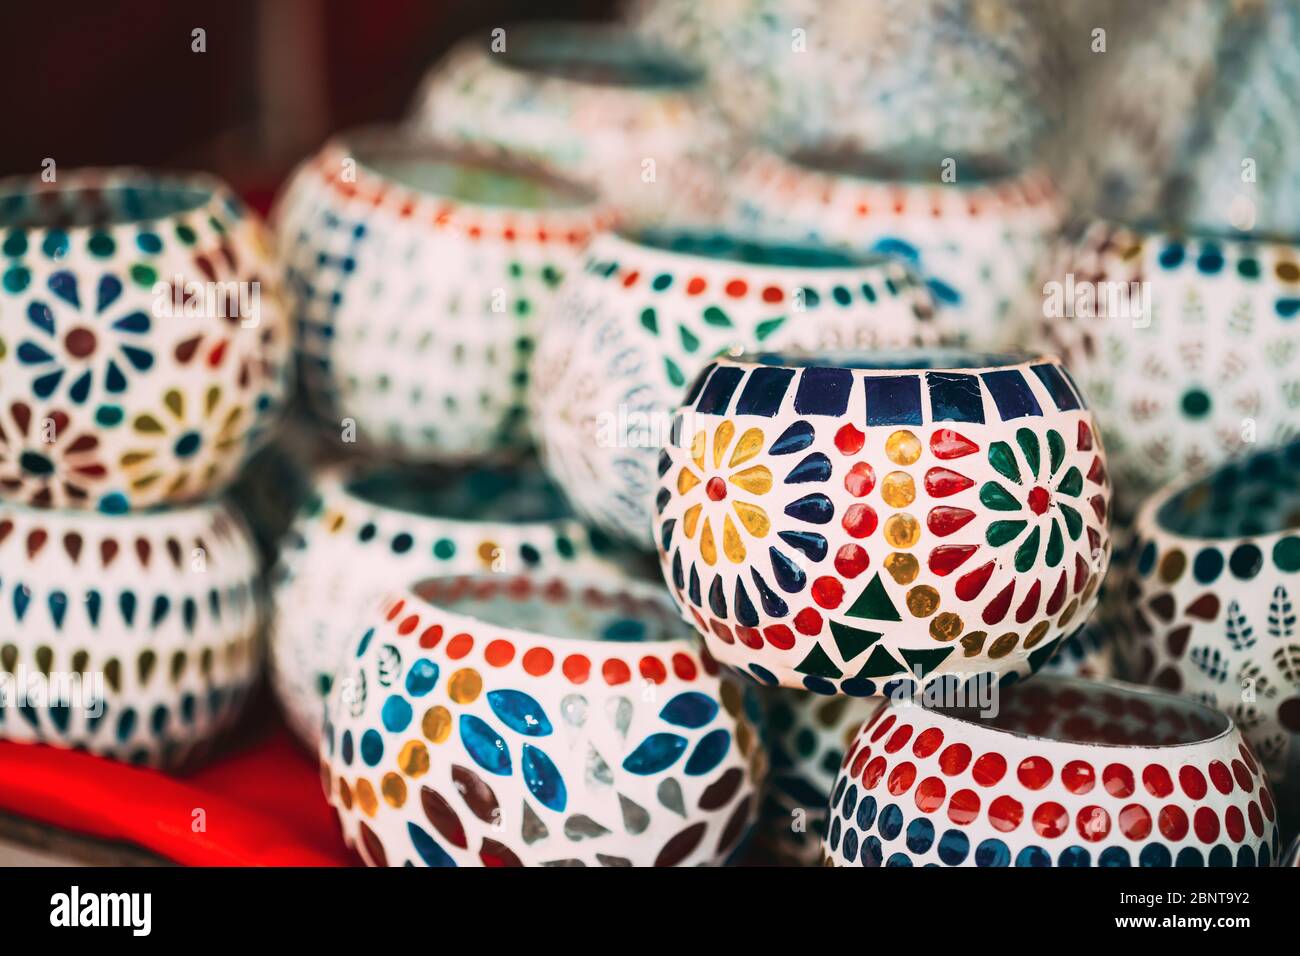 Inde. Marché avec de nombreux porte-bougies en céramique traditionnelle de mosaïque indienne faite à la main. Souvenirs populaires de l'Inde. Banque D'Images